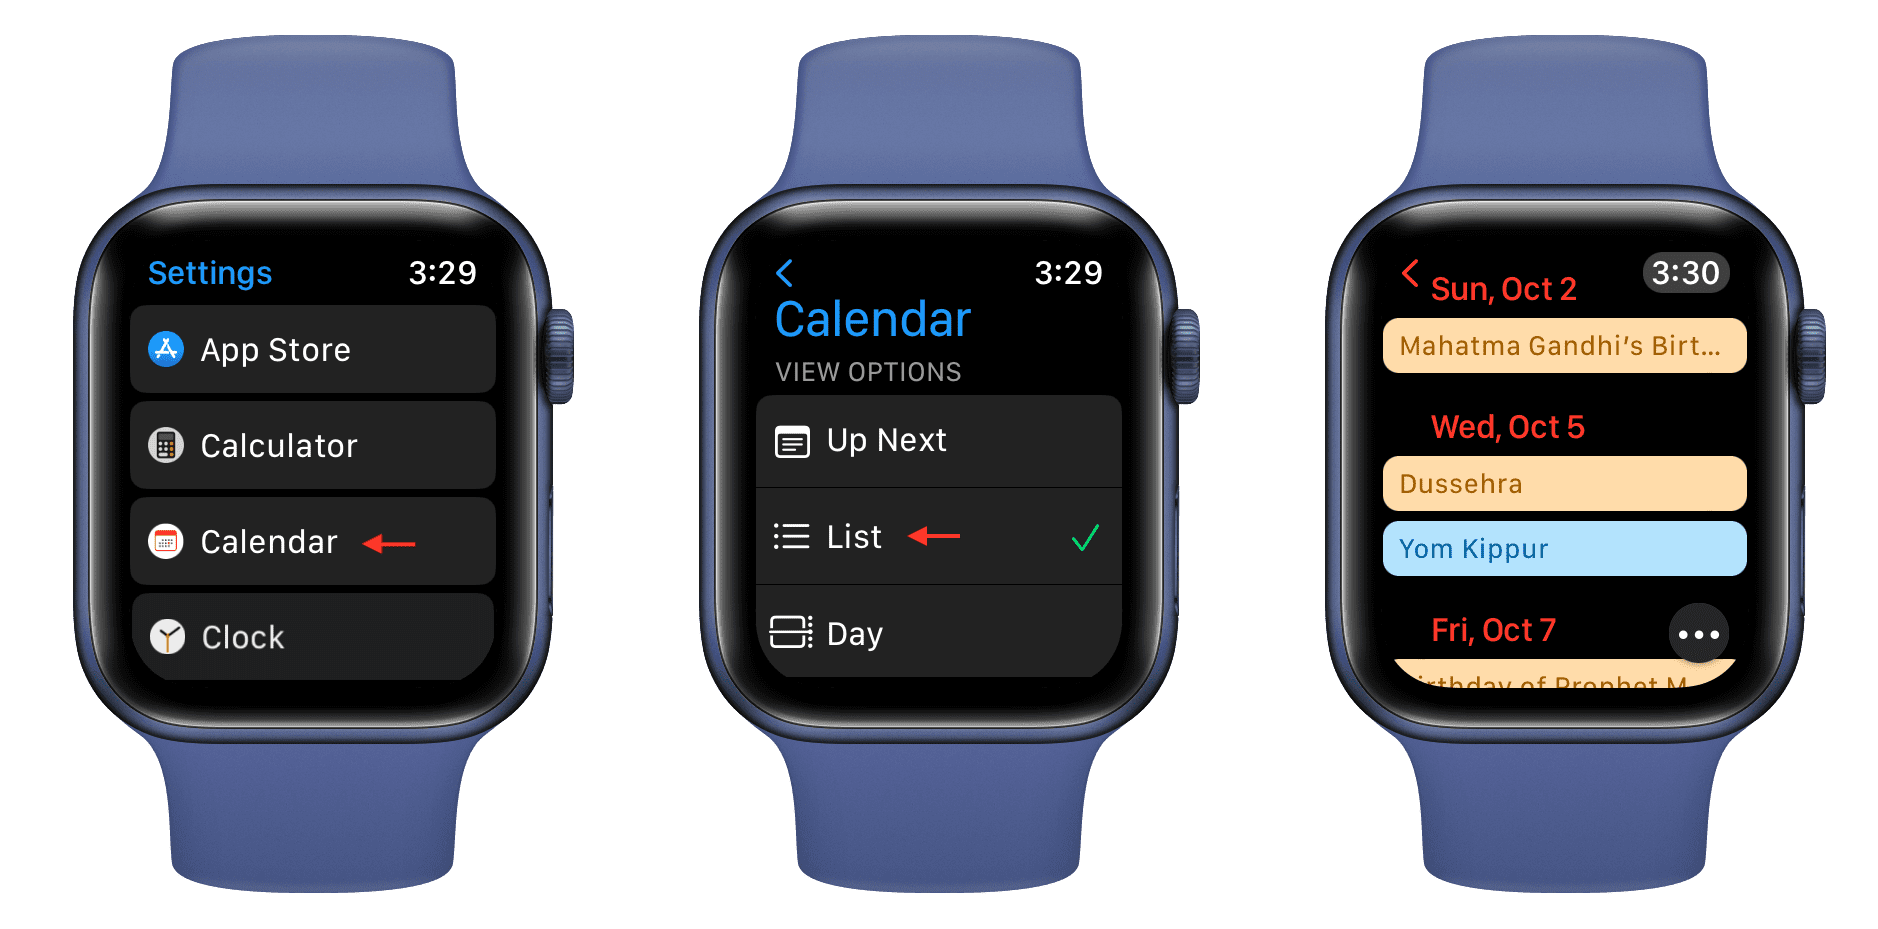 List view in Calendar app on Apple Watch